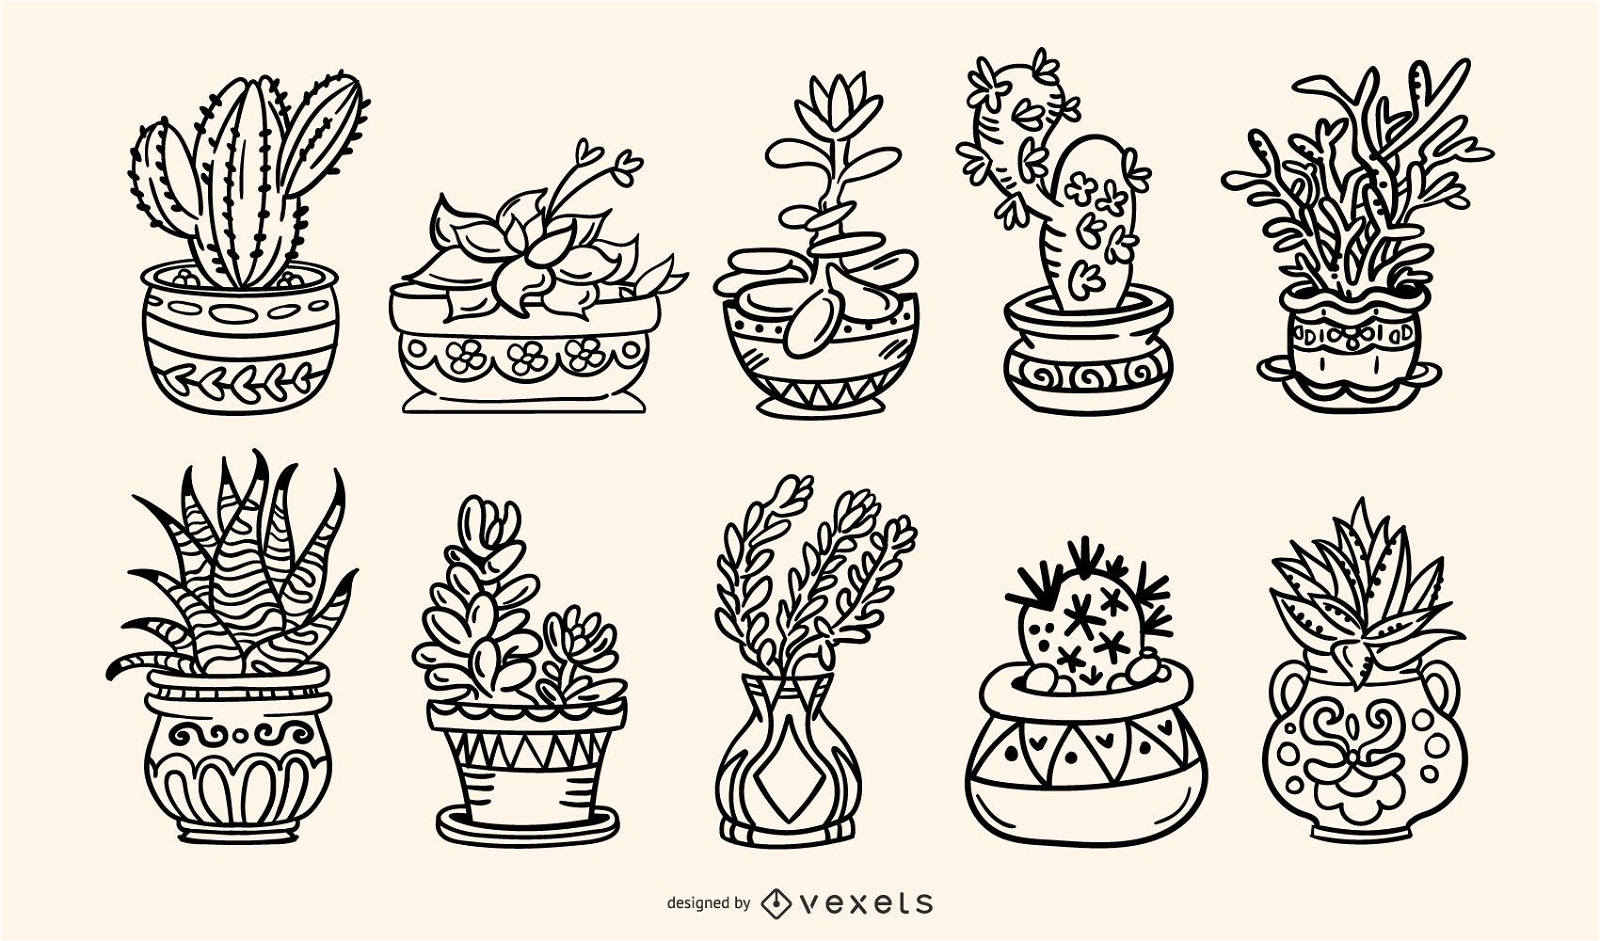 Paquete de ilustraciones de trazos dibujados a mano de plantas suculentas